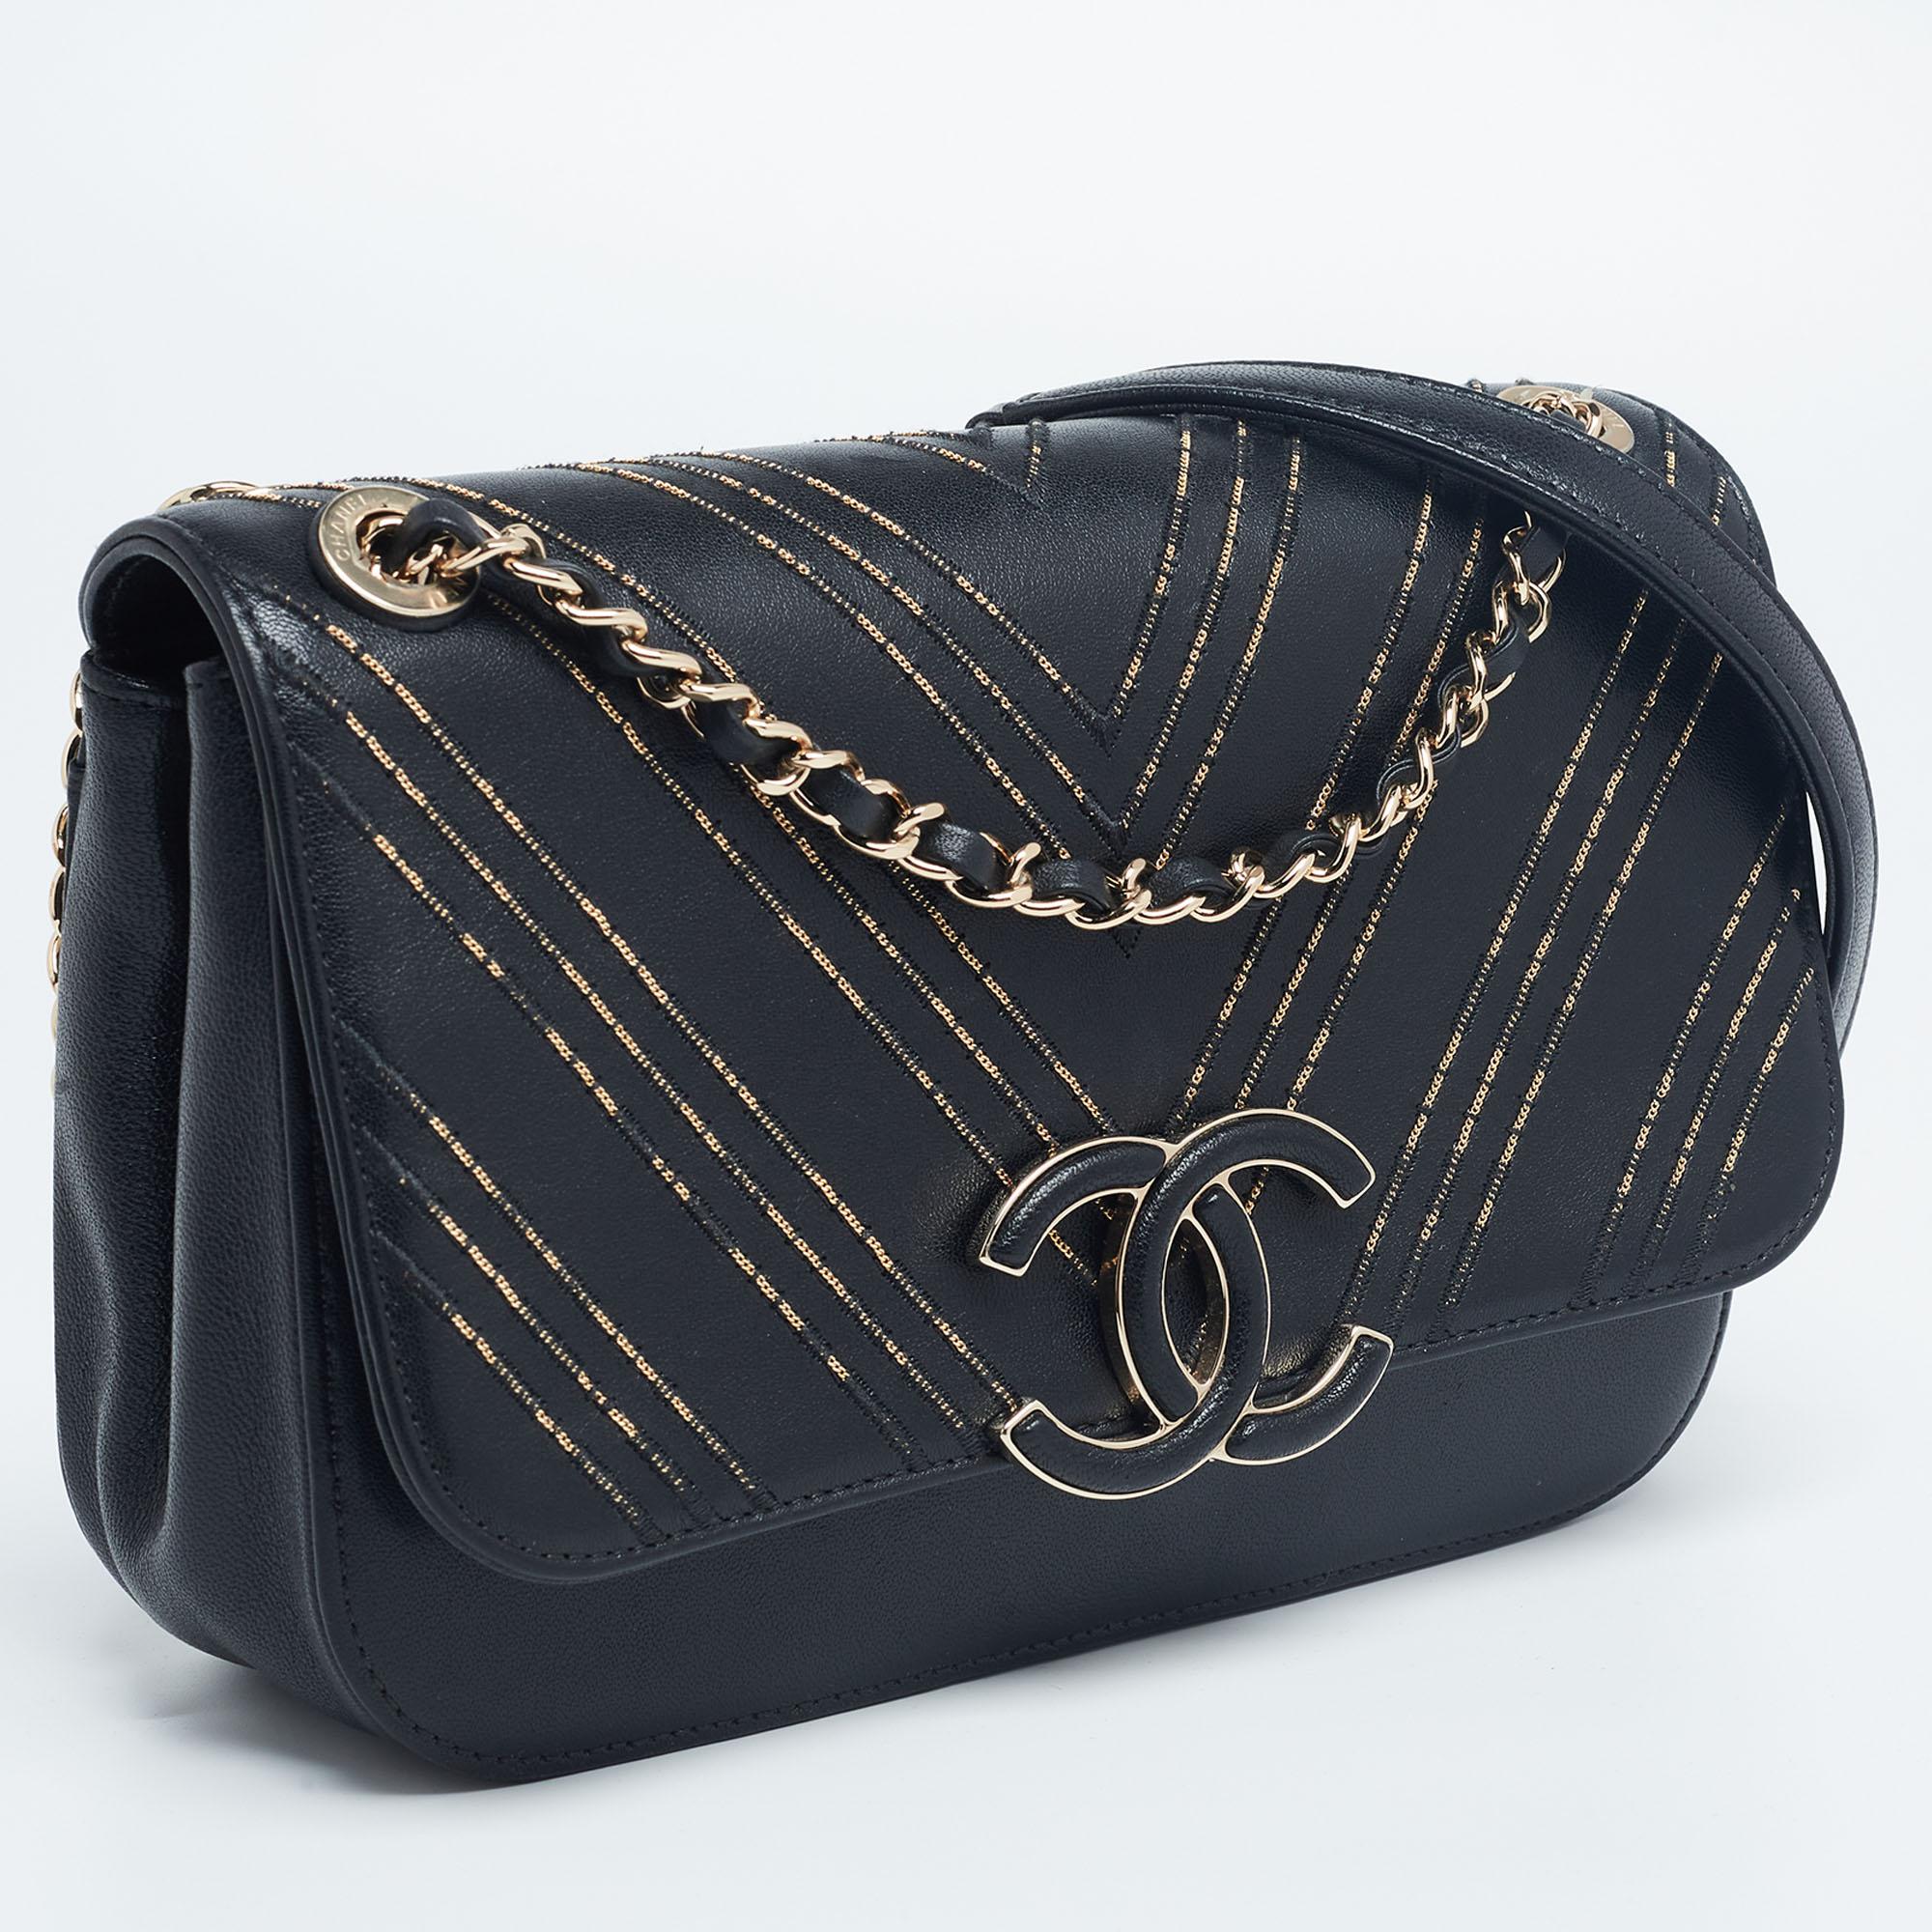 Women's Chanel Black/Gold Chevron Leather CC Subtle Flap Bag